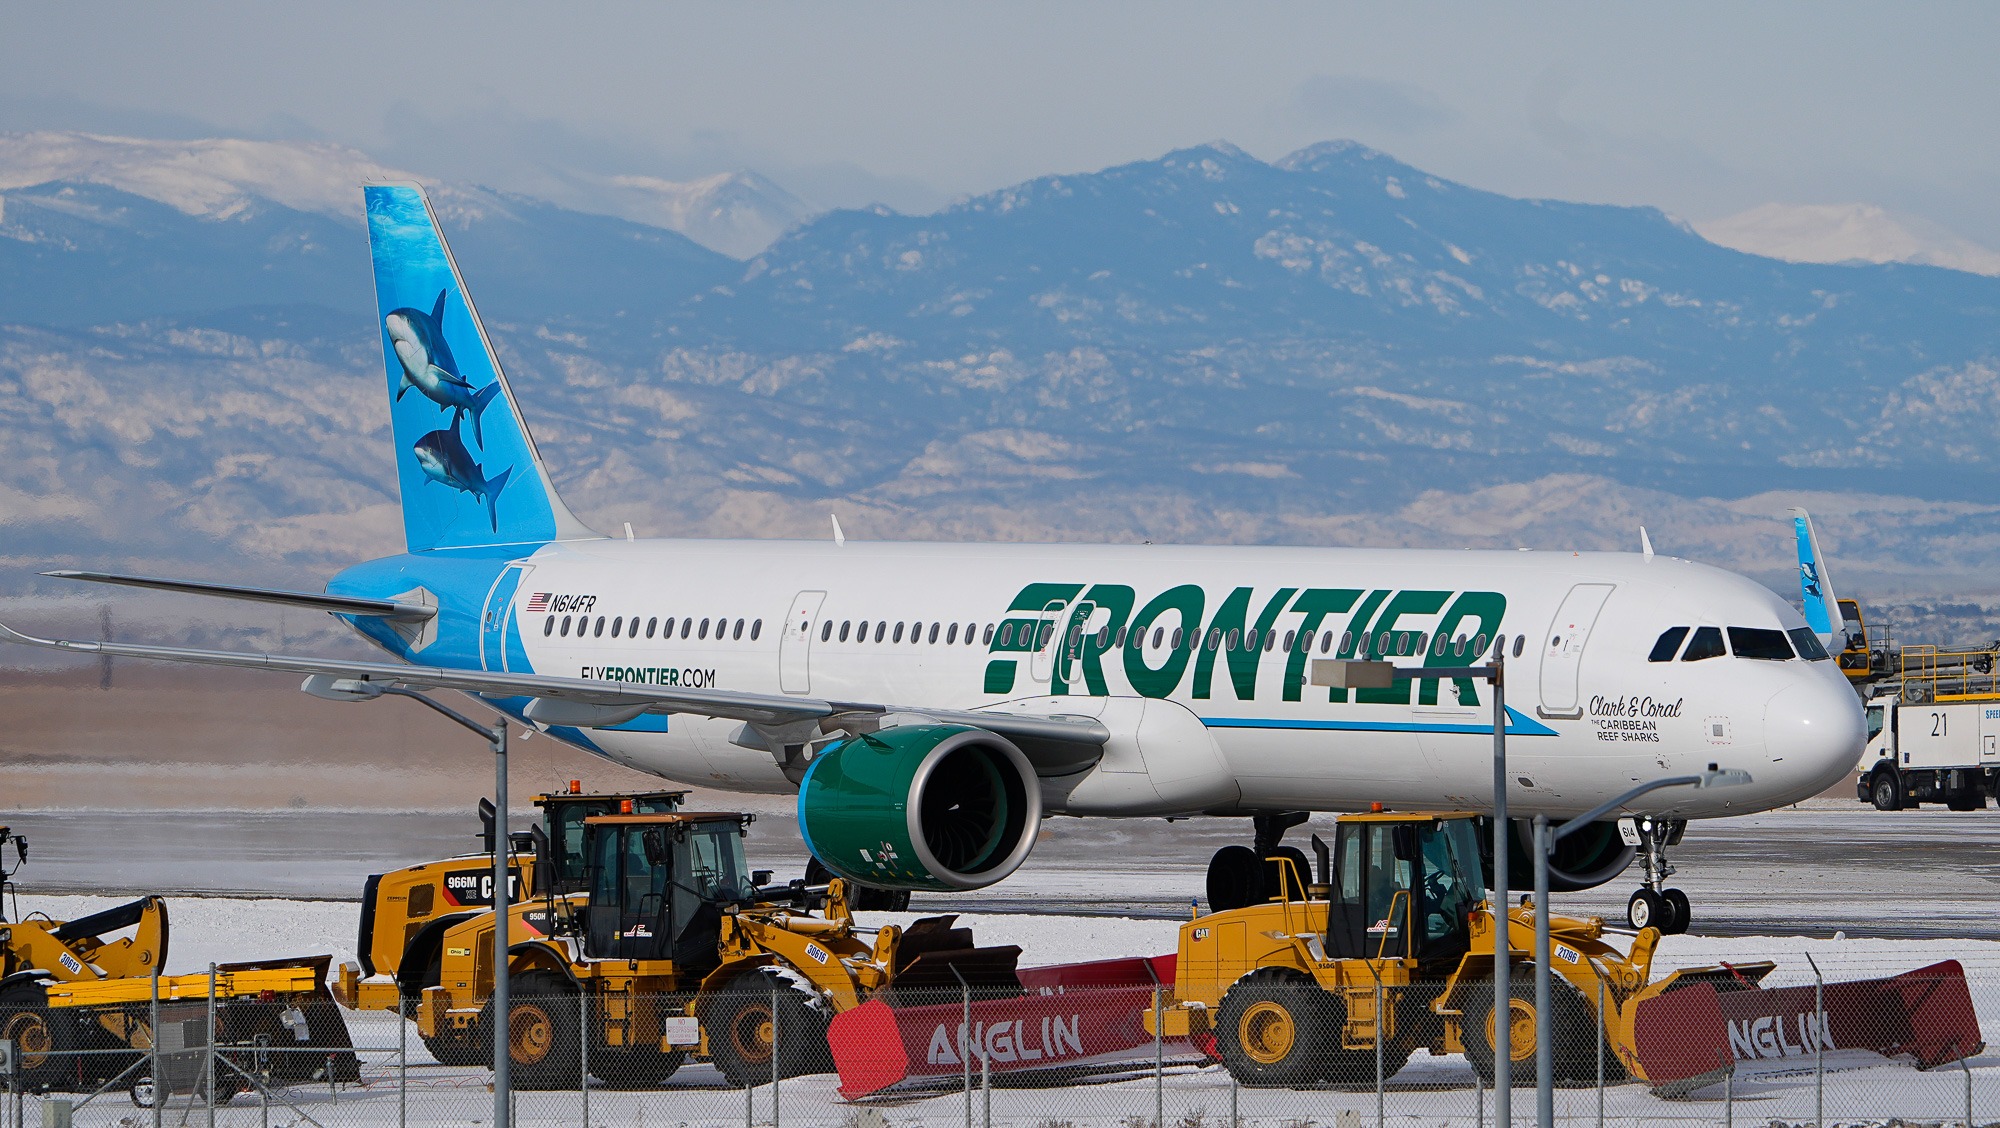 Frontier Airlines’ Major Fee Overhaul 